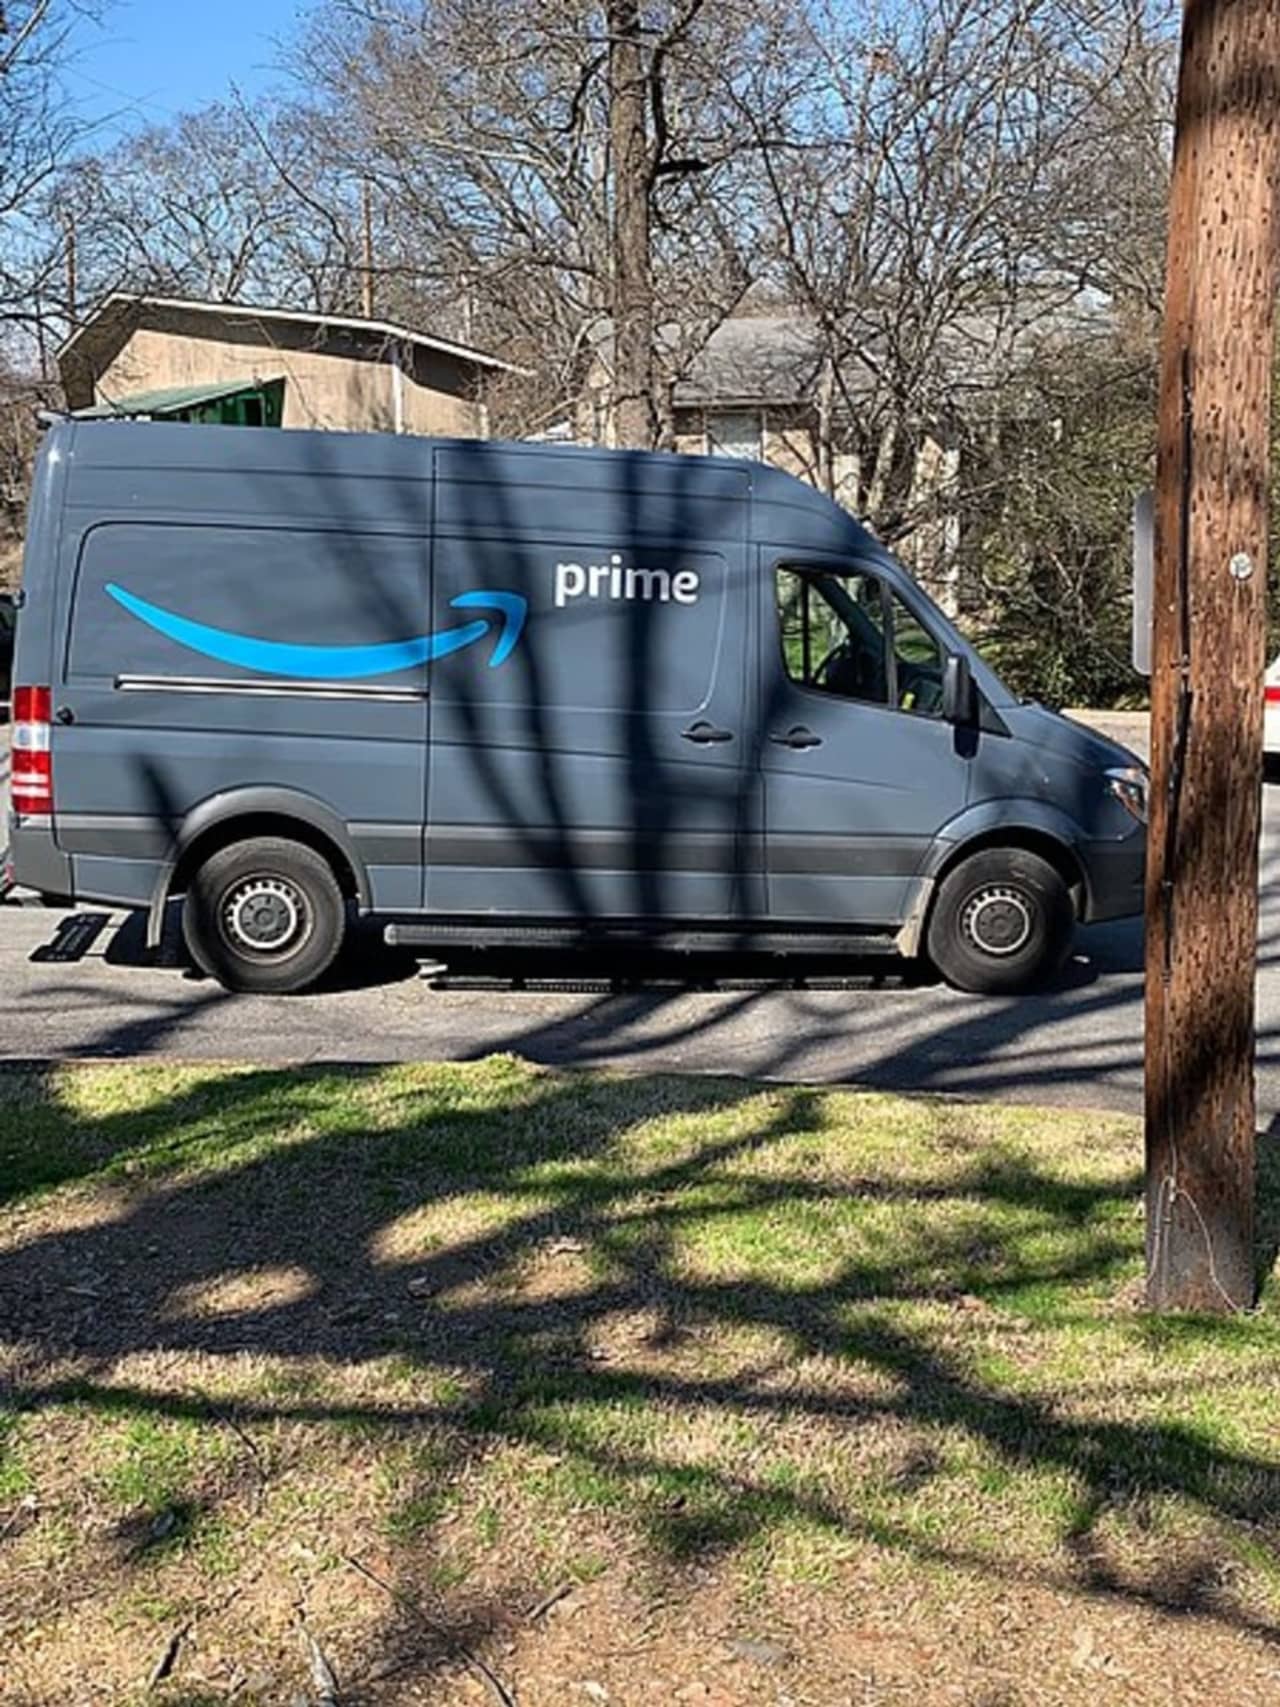 Amazon delivery vehicle